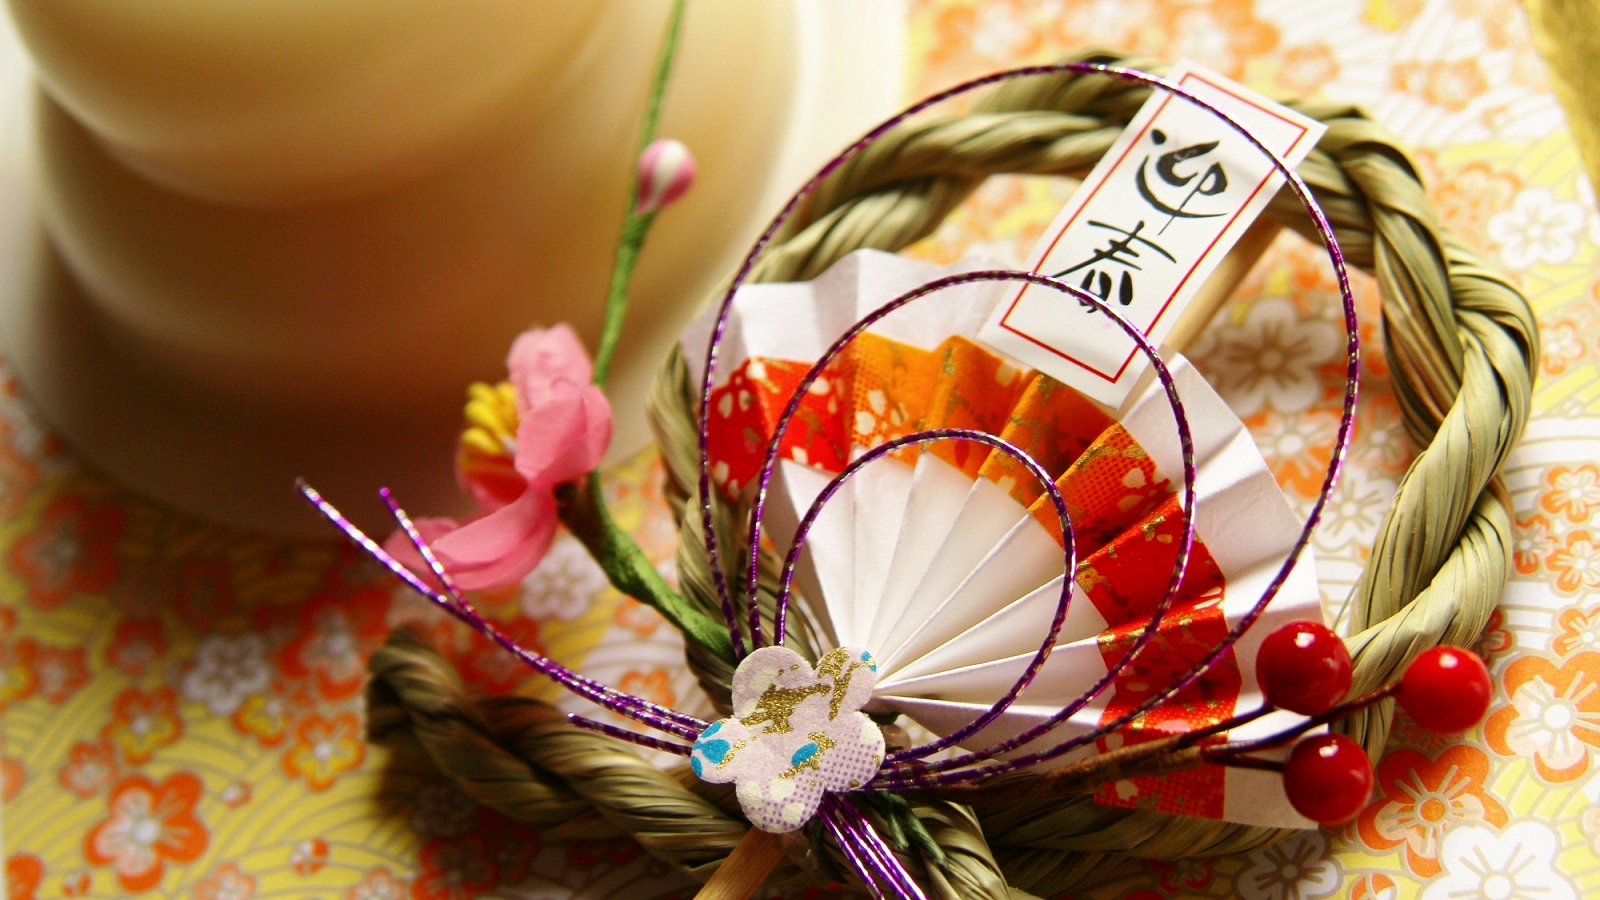 TOP những câu mừng năm mới bằng Tiếng Nhật hay và ý nghĩa hiện nay